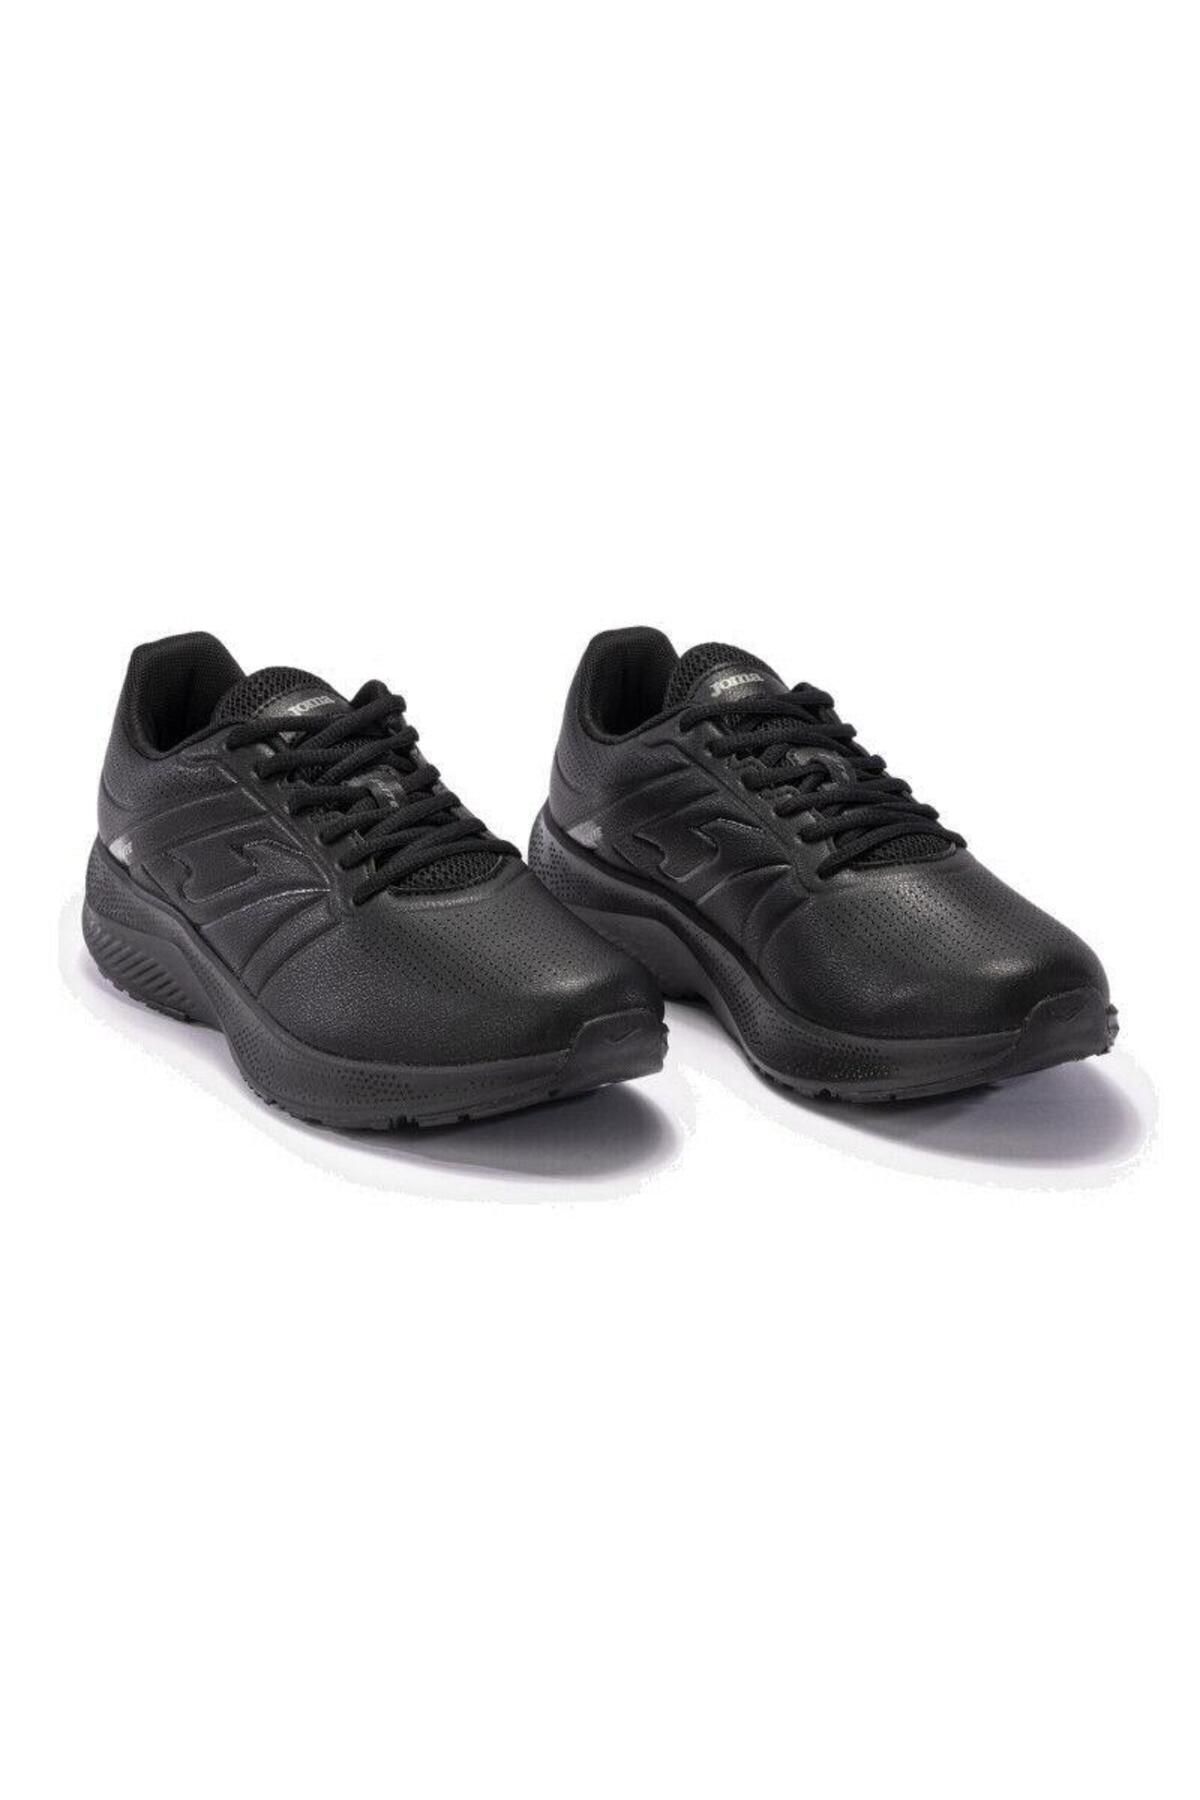 Joma Siyah ELITE 2301 Erkek Koşu Ayakkabısı Koşu Ayakkabısı